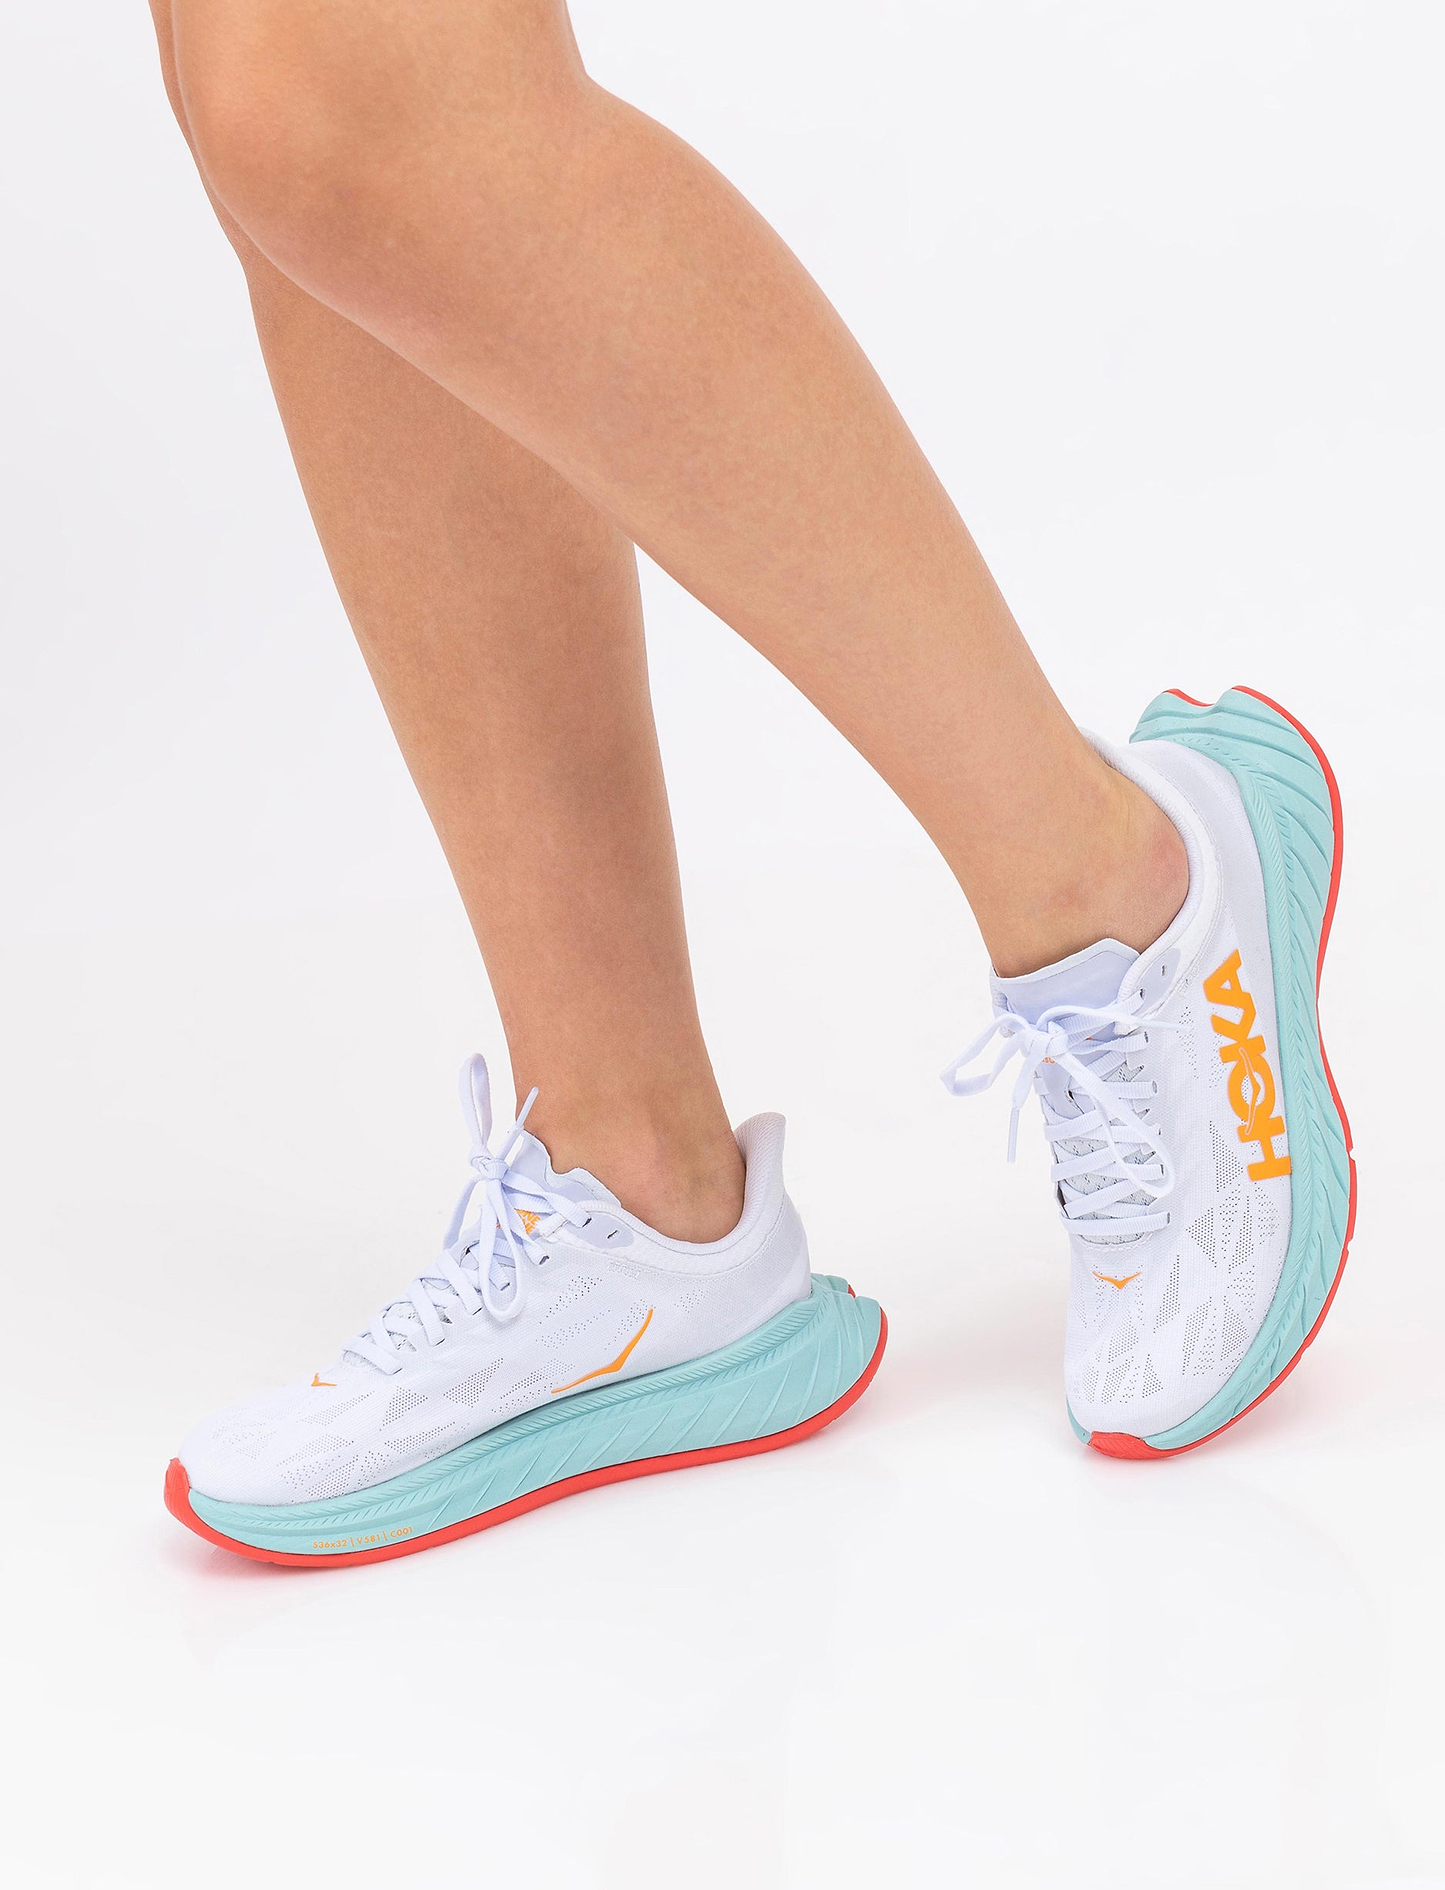 Hoka Carbon X2 - נעלי ספורט לנשים הוקה קרבון איקס 2 בצבע לבן/תכלת/כתום